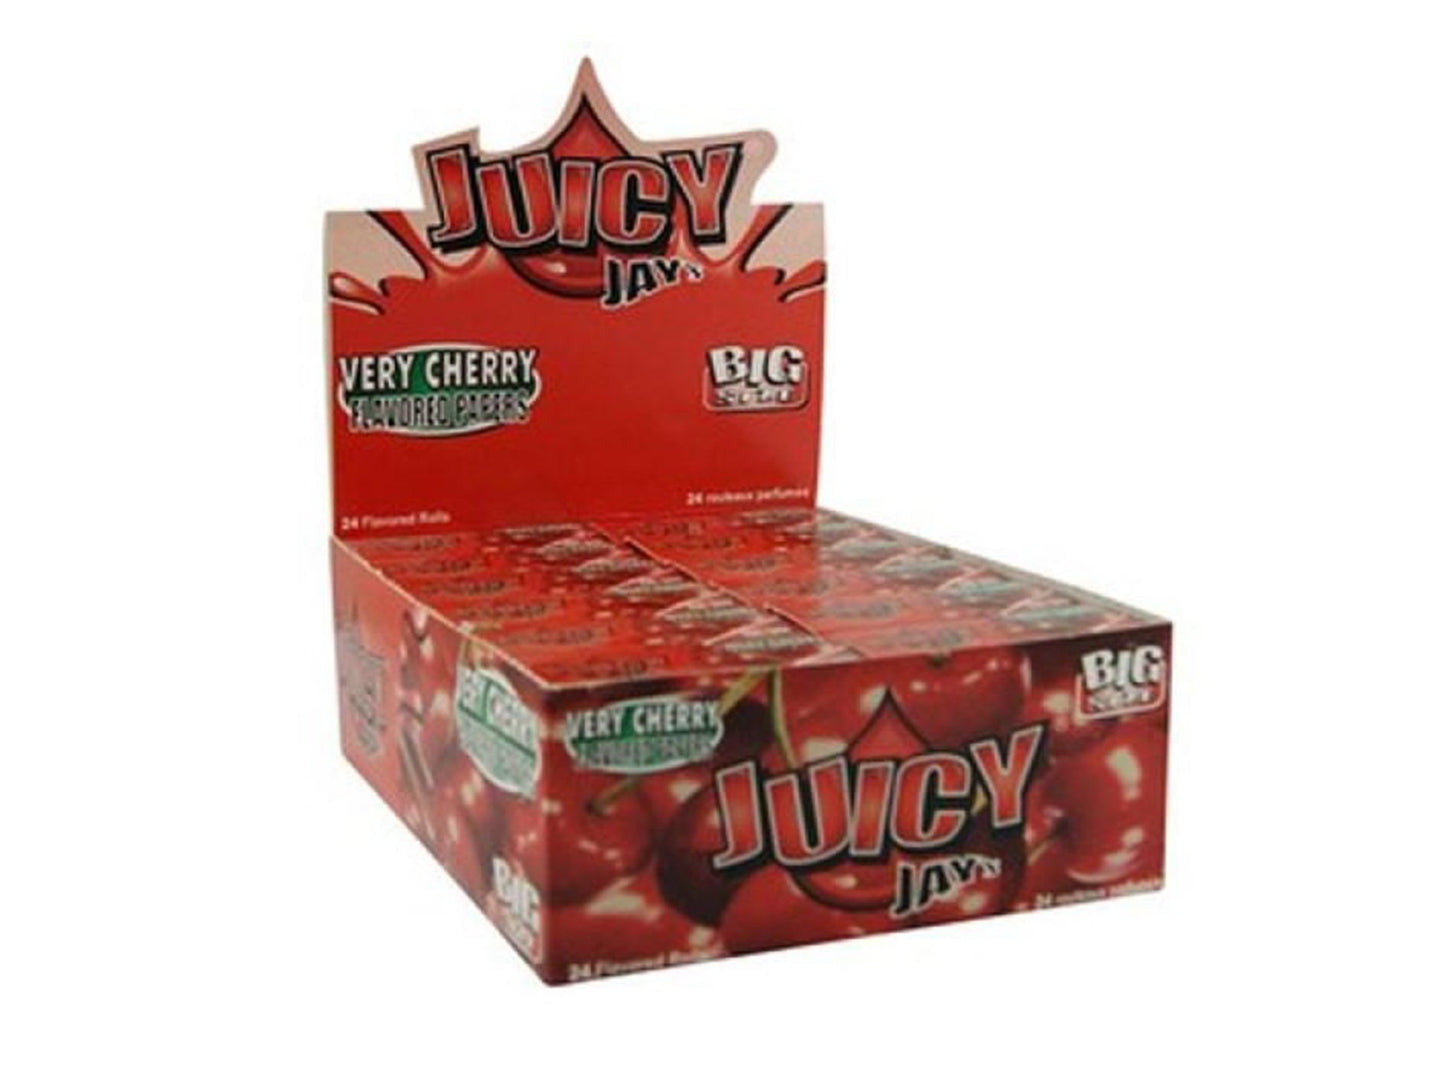 JUICY JAYS Flavoured Rolls - 24 Pack Box - VIR Wholesale